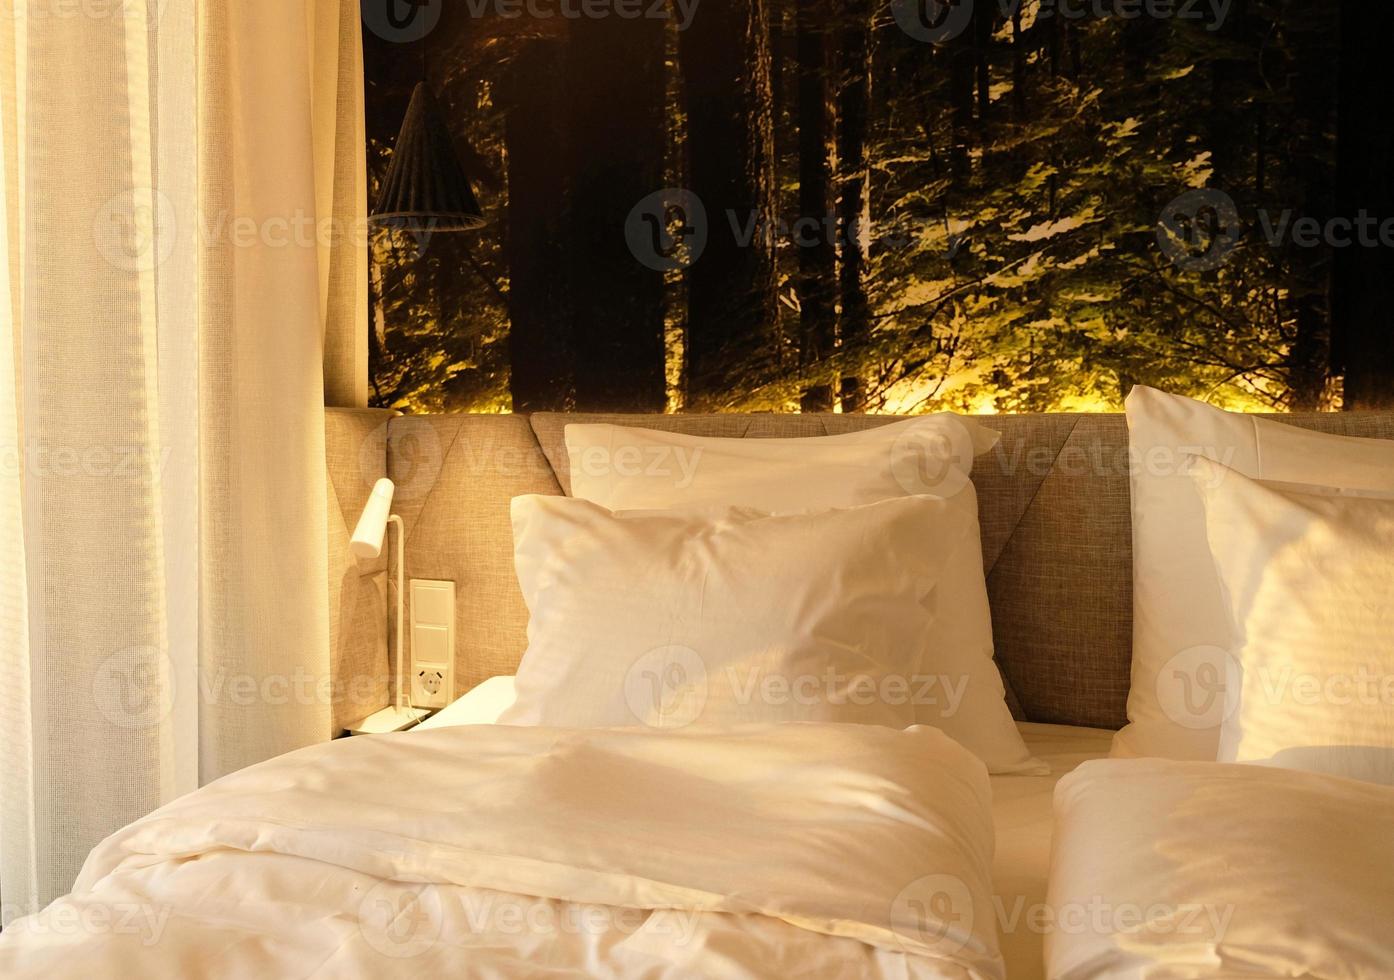 en fragment av en sovrum med en modern mysigt interiör design av en hus eller hotell. mjuk kudde och filt, eleganta bekväm möbel. foto